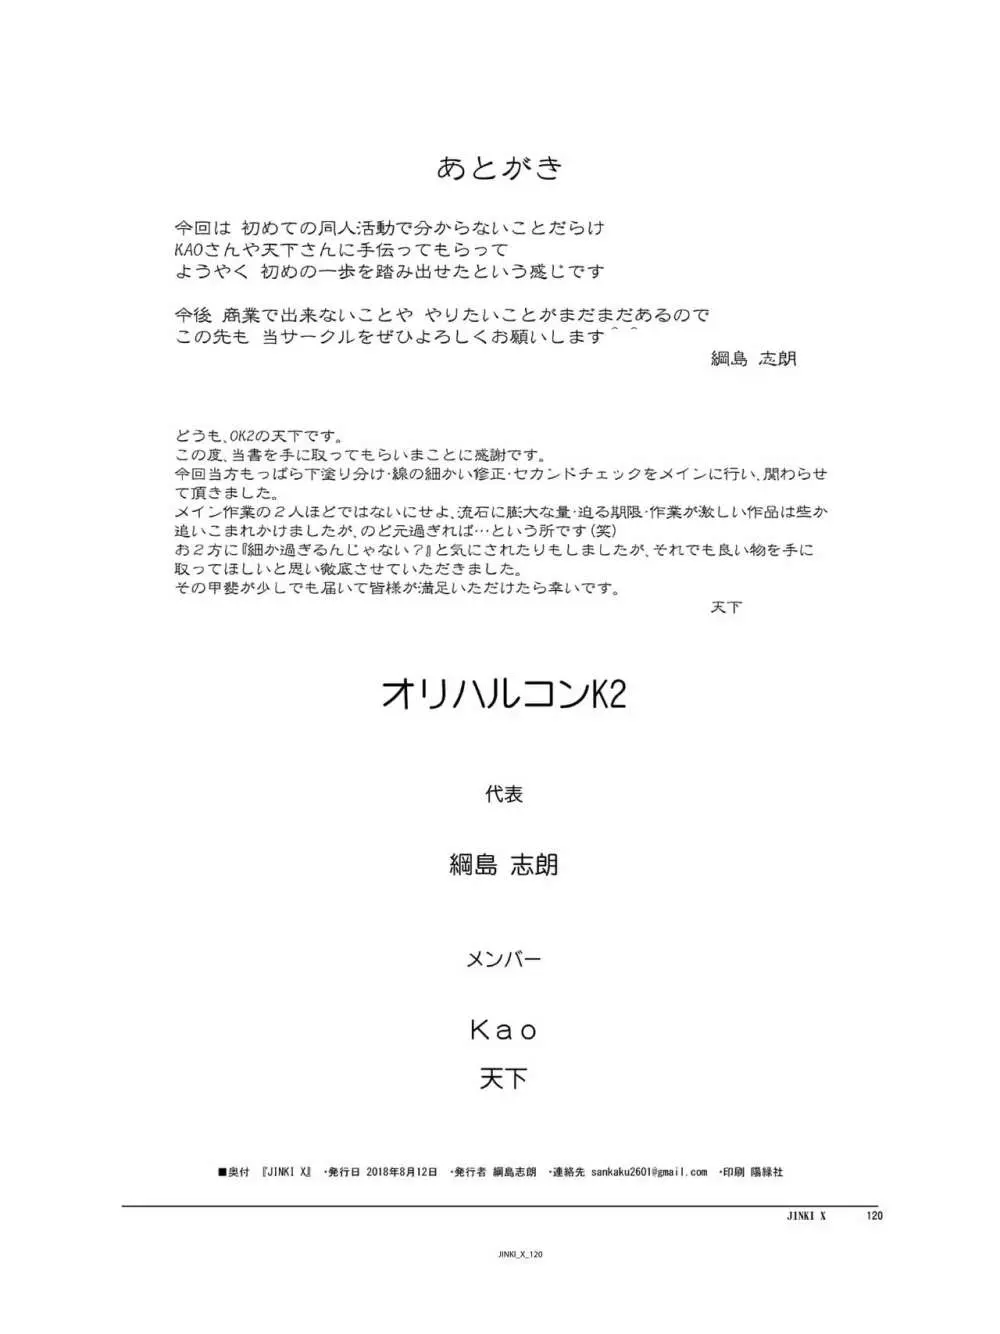 JINKI X - page121